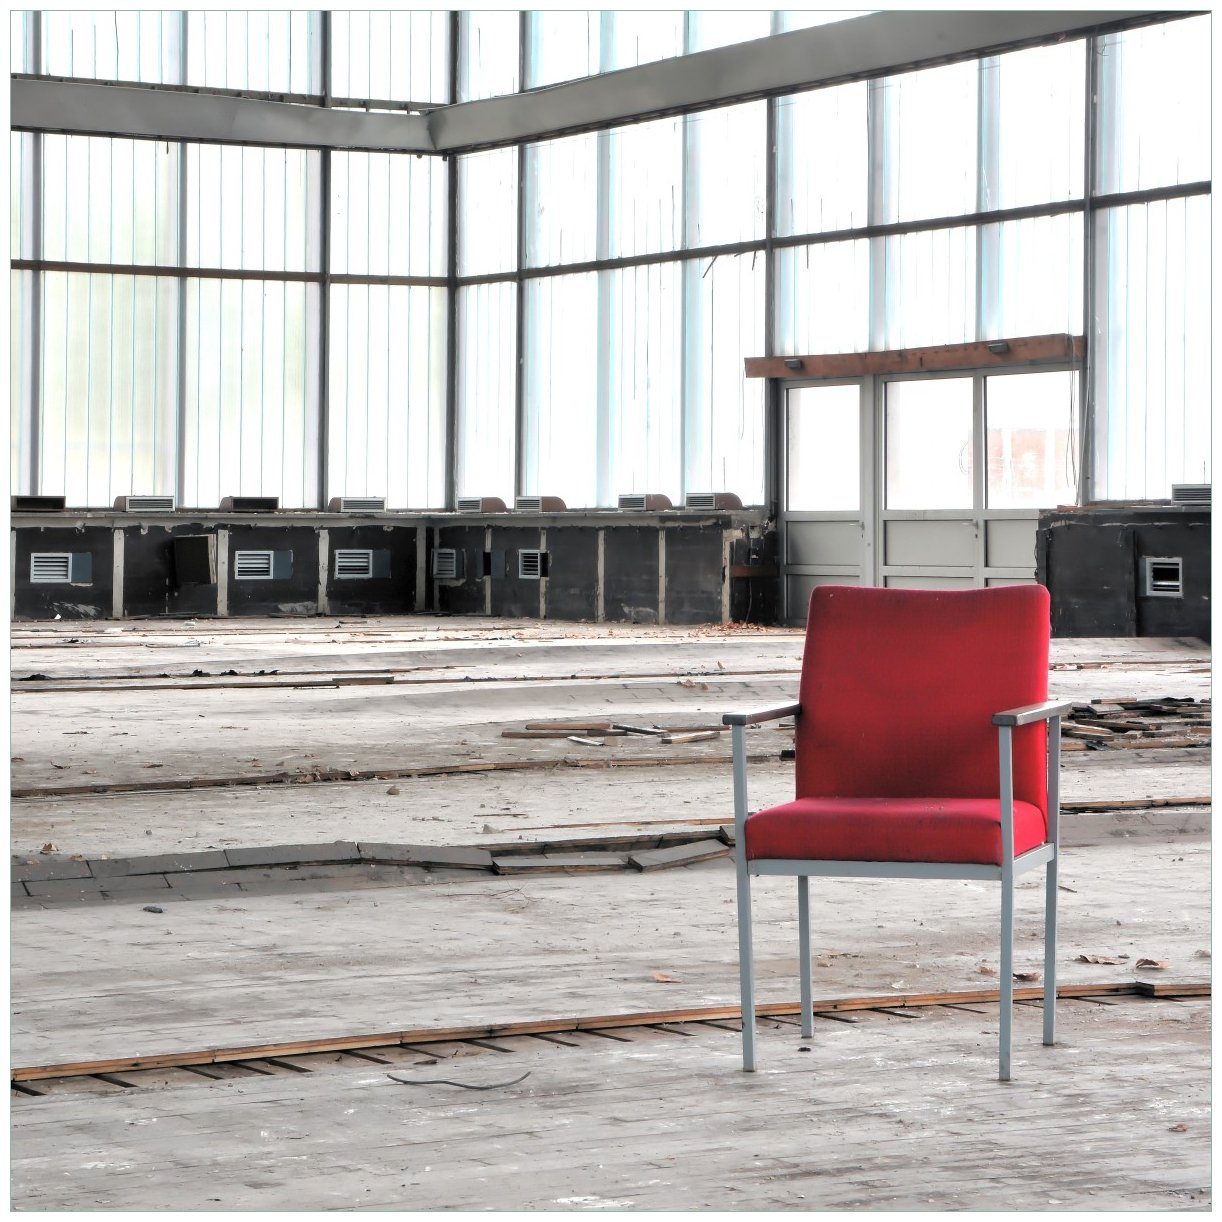 Tisch einer Lack Tischplatte Leere in - Stille St), (1 Ikea alten und Wallario einsamer geeignet Halle roter ein Stuhl für